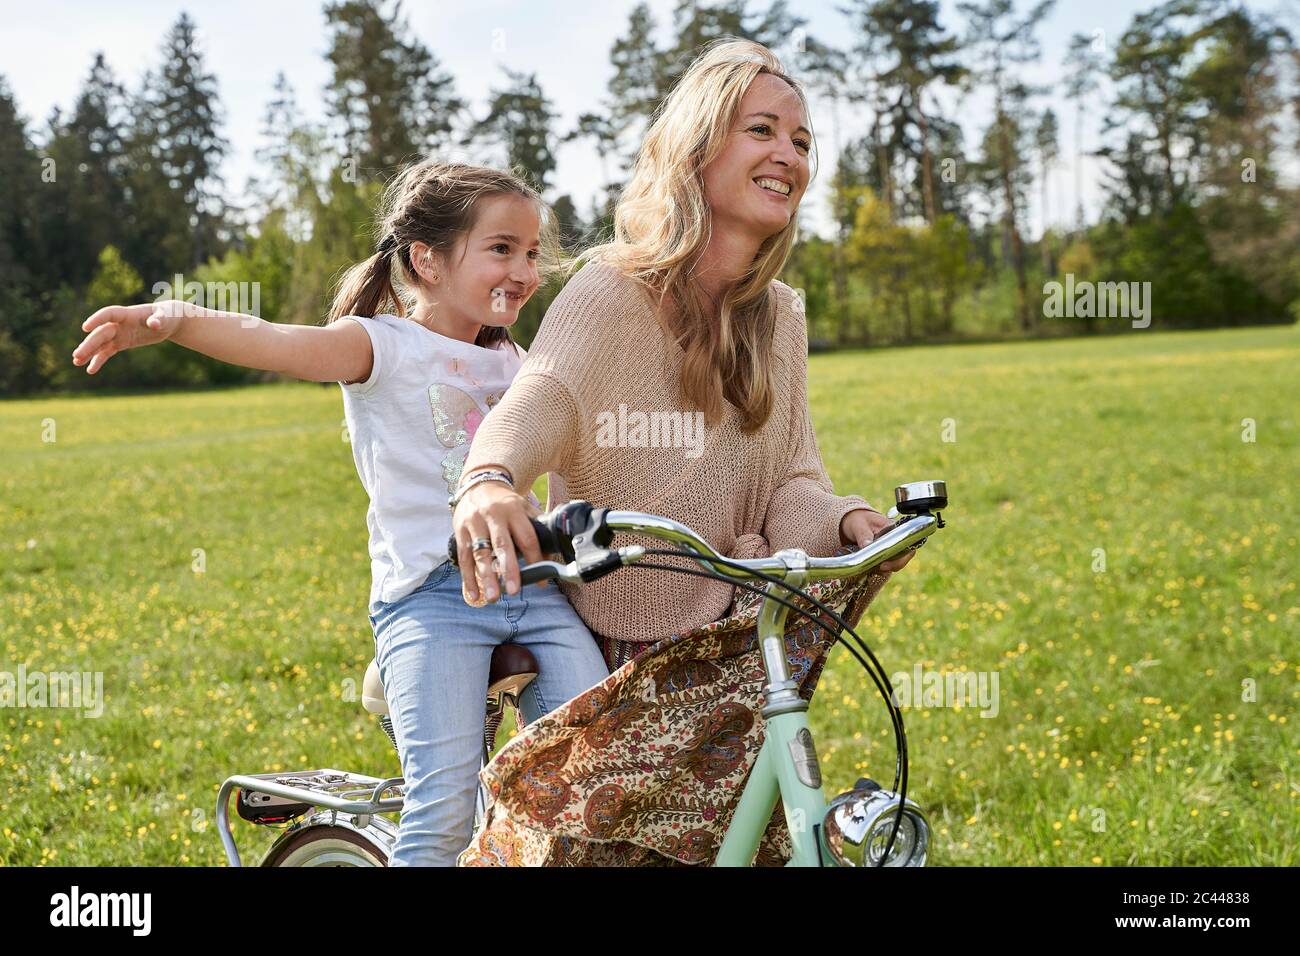 Ragazza con le braccia allungate godendo di giro in bicicletta con la madre sulle piante Foto Stock